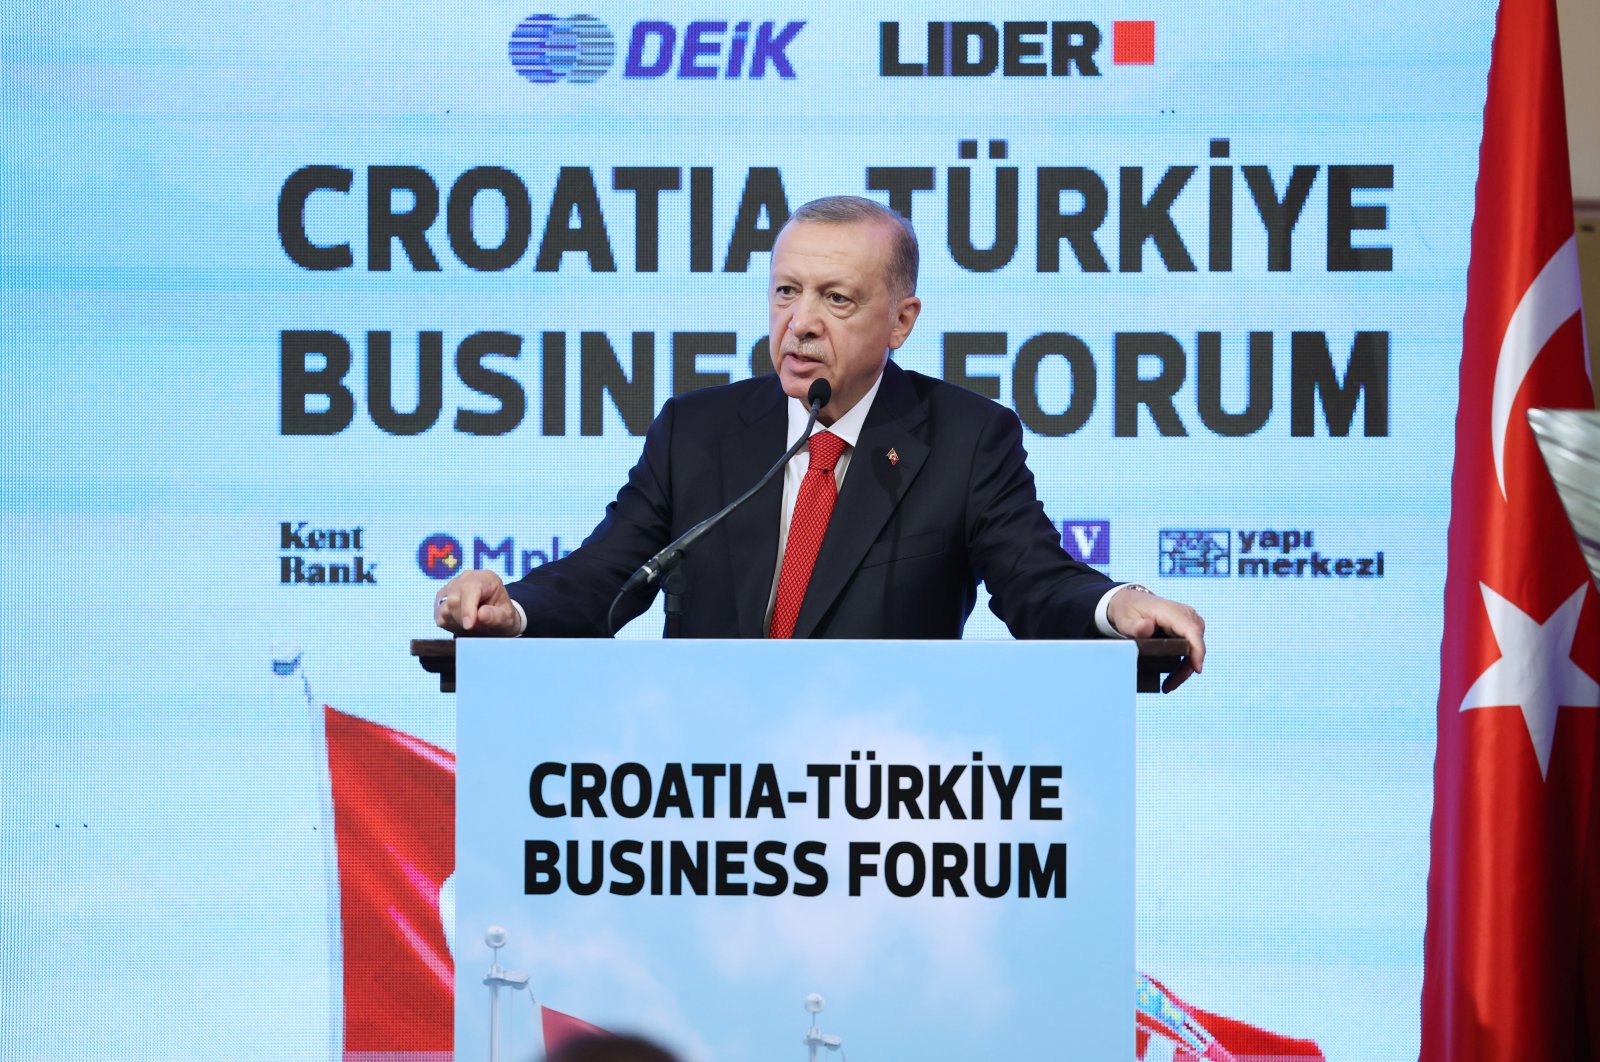 Kerja sama ekonomi antara Türkiye, Kroasia ‘menjanjikan’: Erdogan